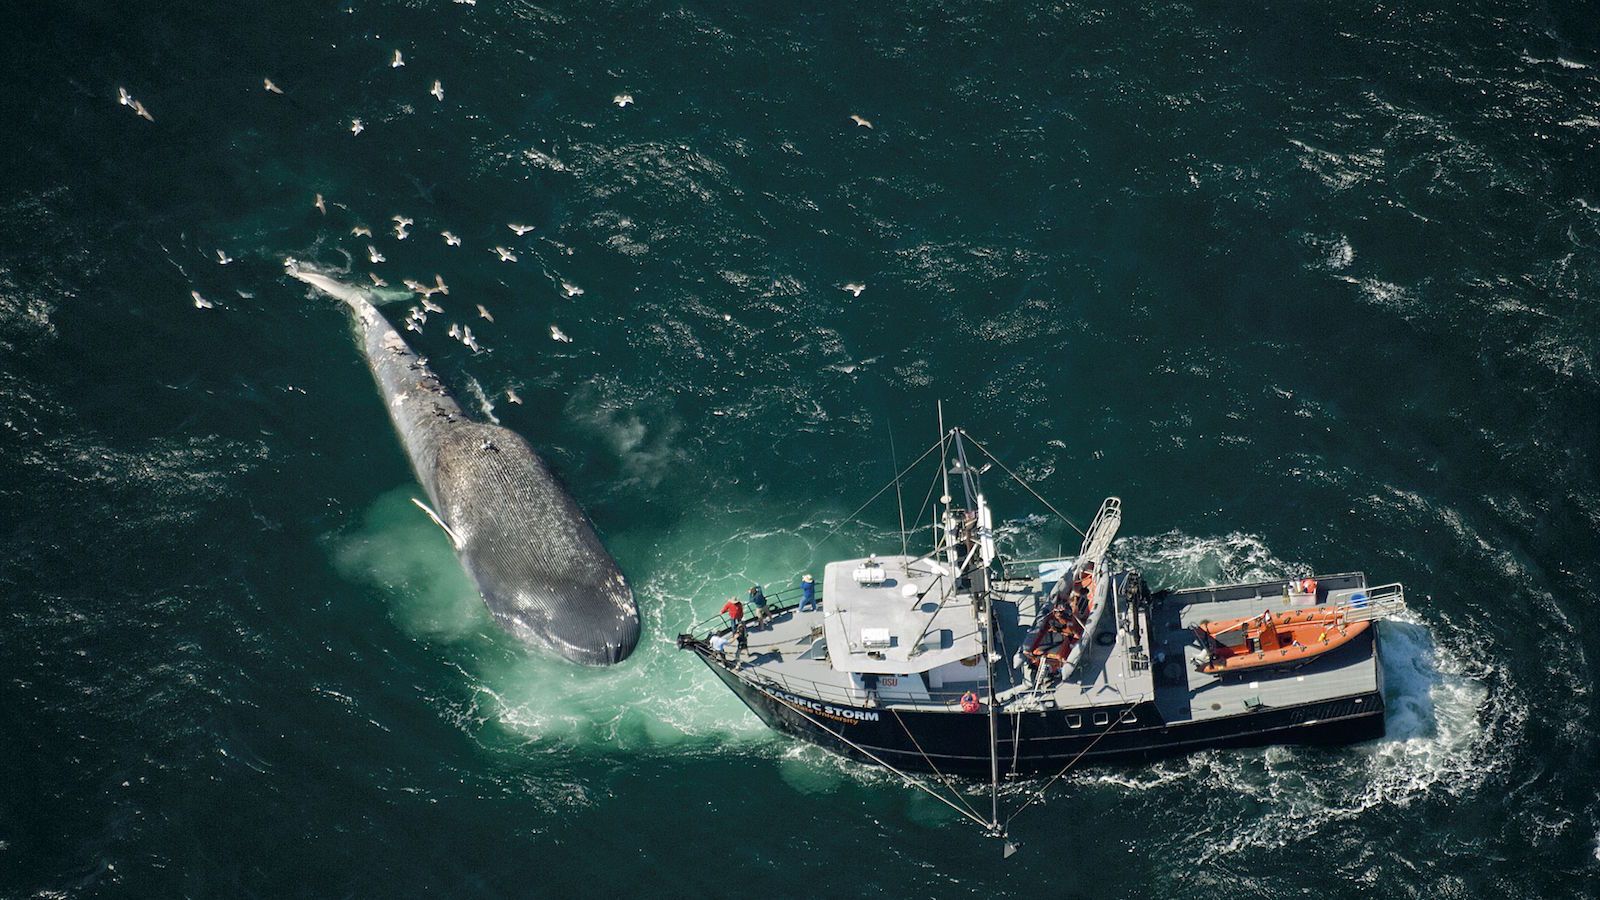 Mitilicultura, colisiones con embarcaciones y salmoneras: los graves peligros que amenazan la supervivencia de las ballenas azules en la patagonia chilena